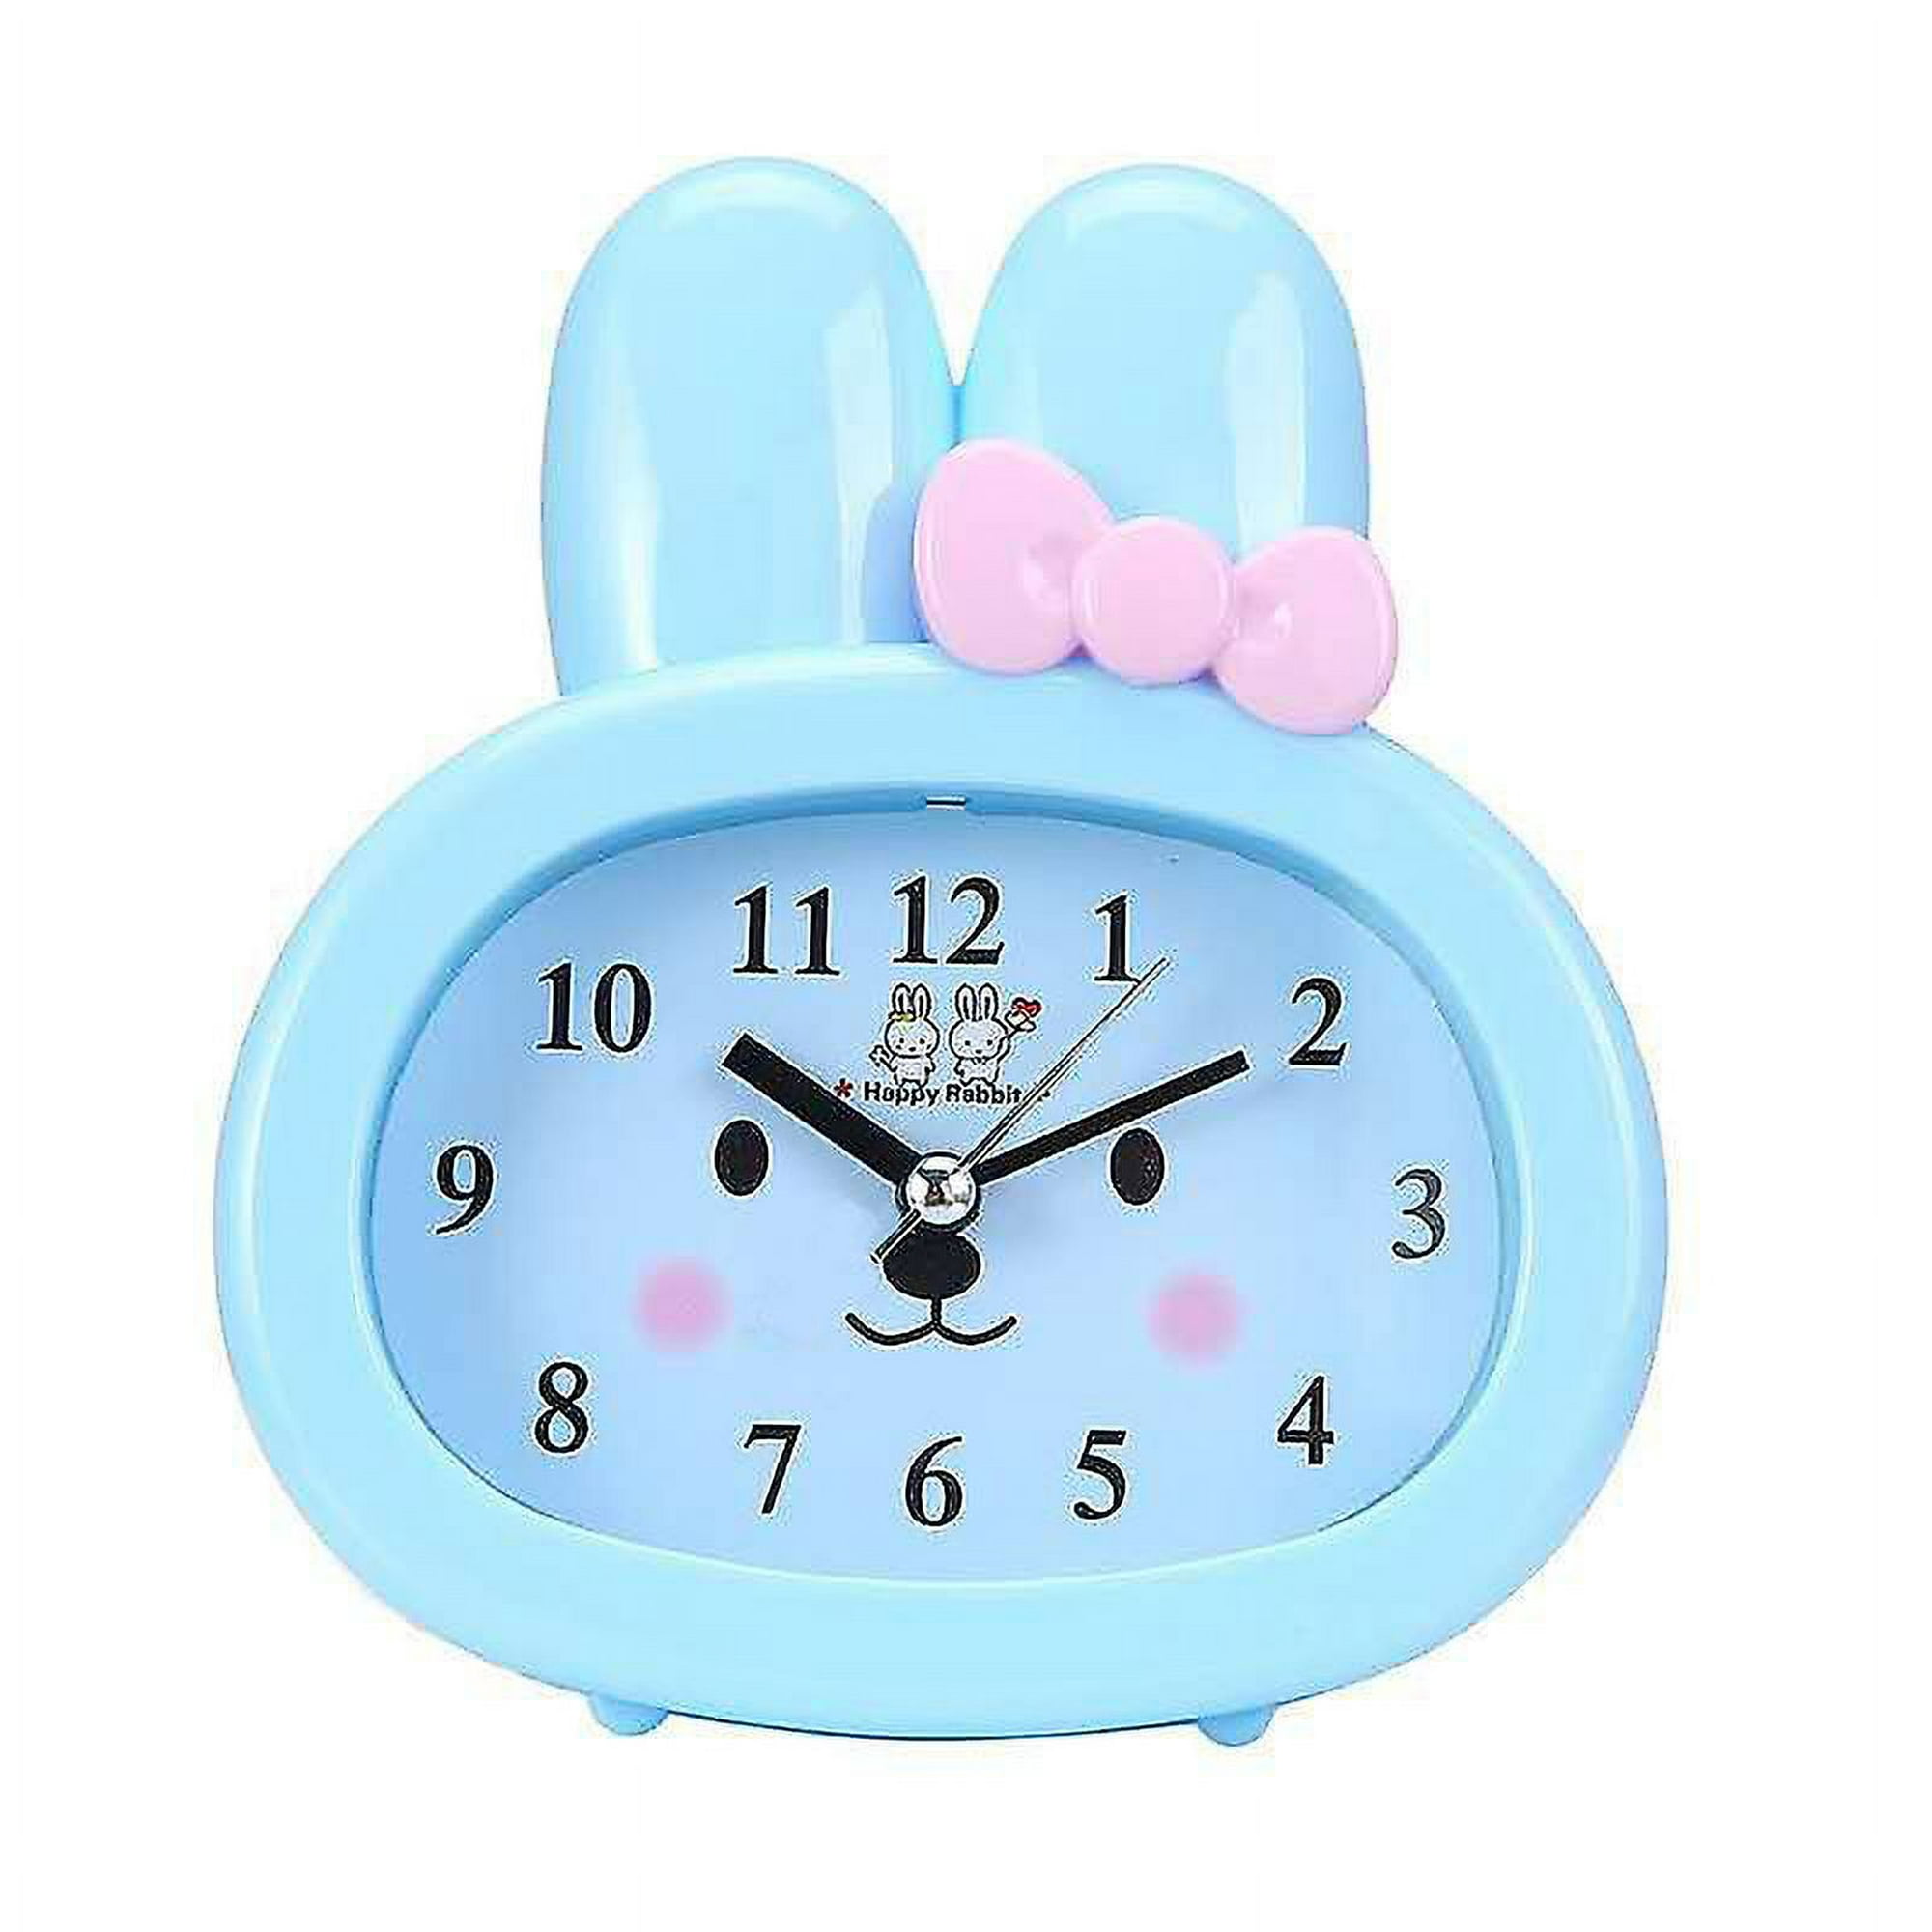 Reloj despertador pequeño creativo de 4 pulgadas, despertador despertador  para niños y estudiantes, reloj despertador silencioso de escritorio (color